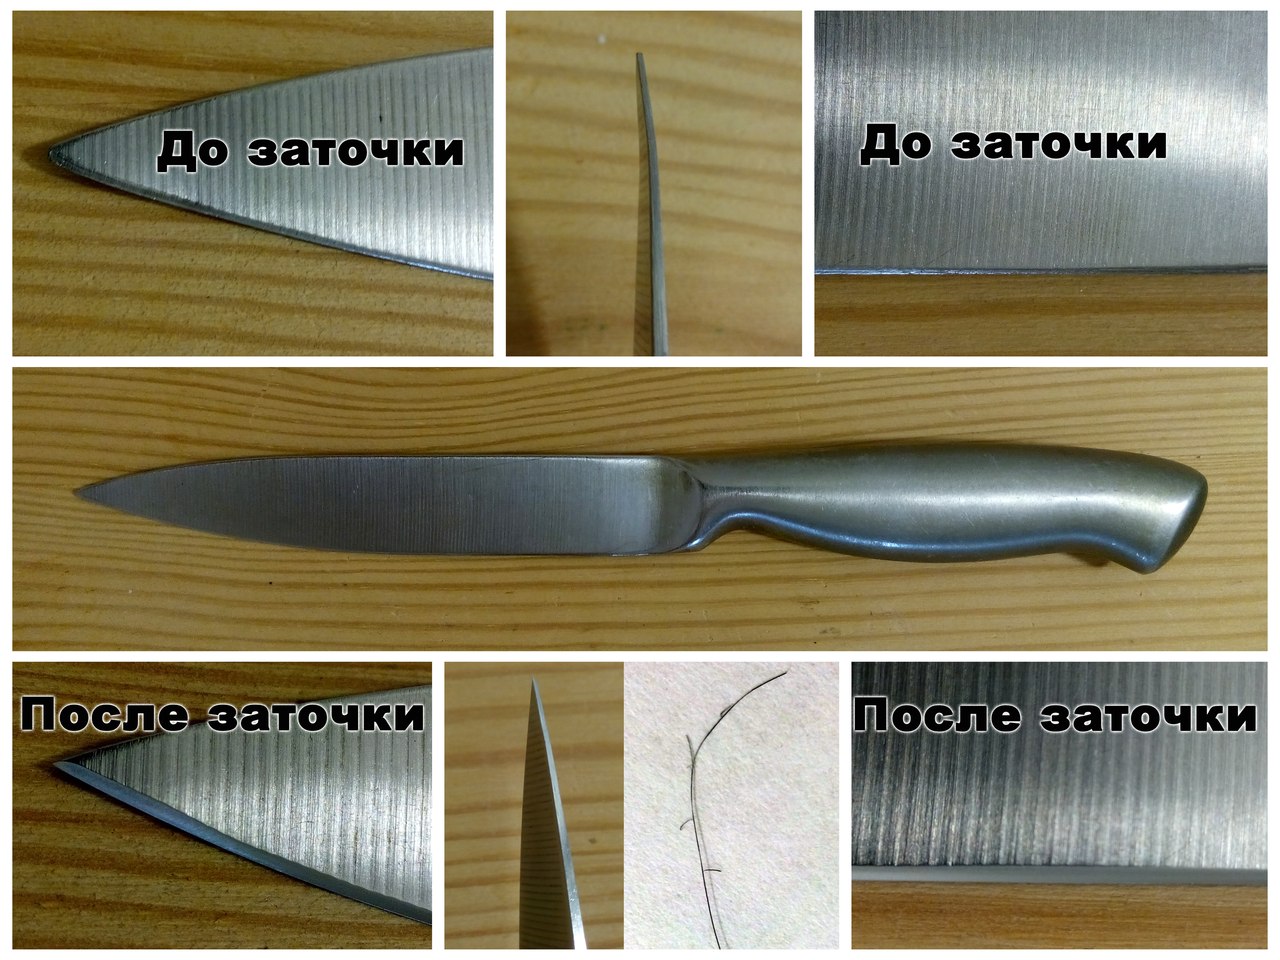 Как заточить нож правильно в домашних условиях, заточить керамический нож